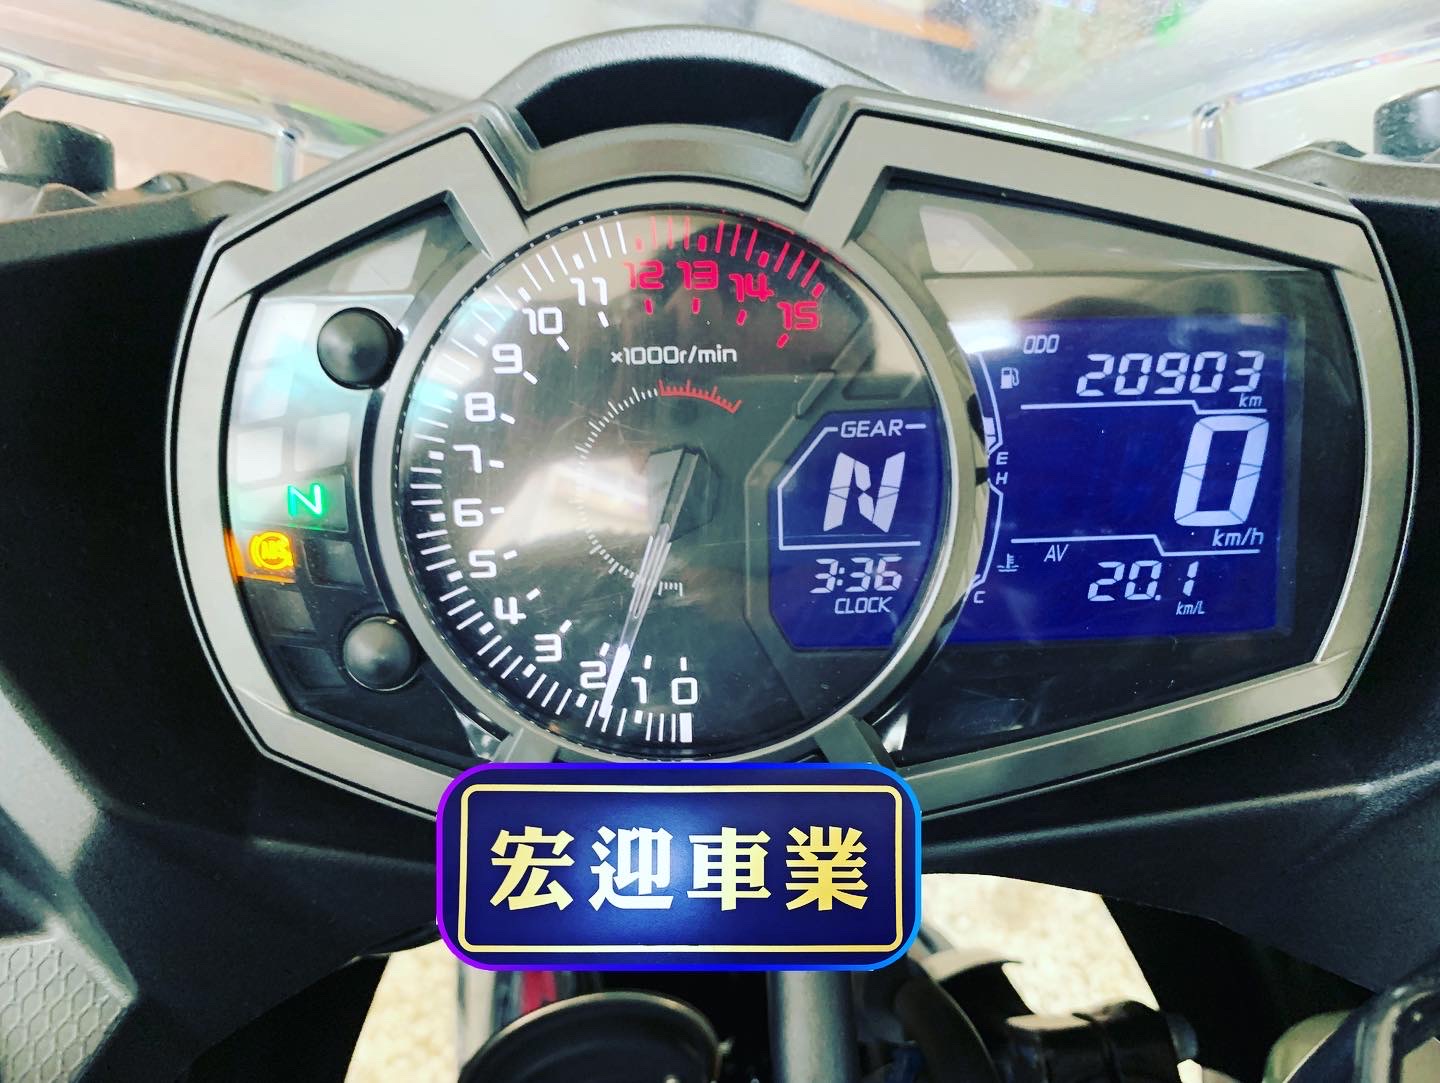 KAWASAKI NINJA400 - 中古/二手車出售中 2019 忍400 基本改裝都上車了 可現場看車 試車 | 個人自售